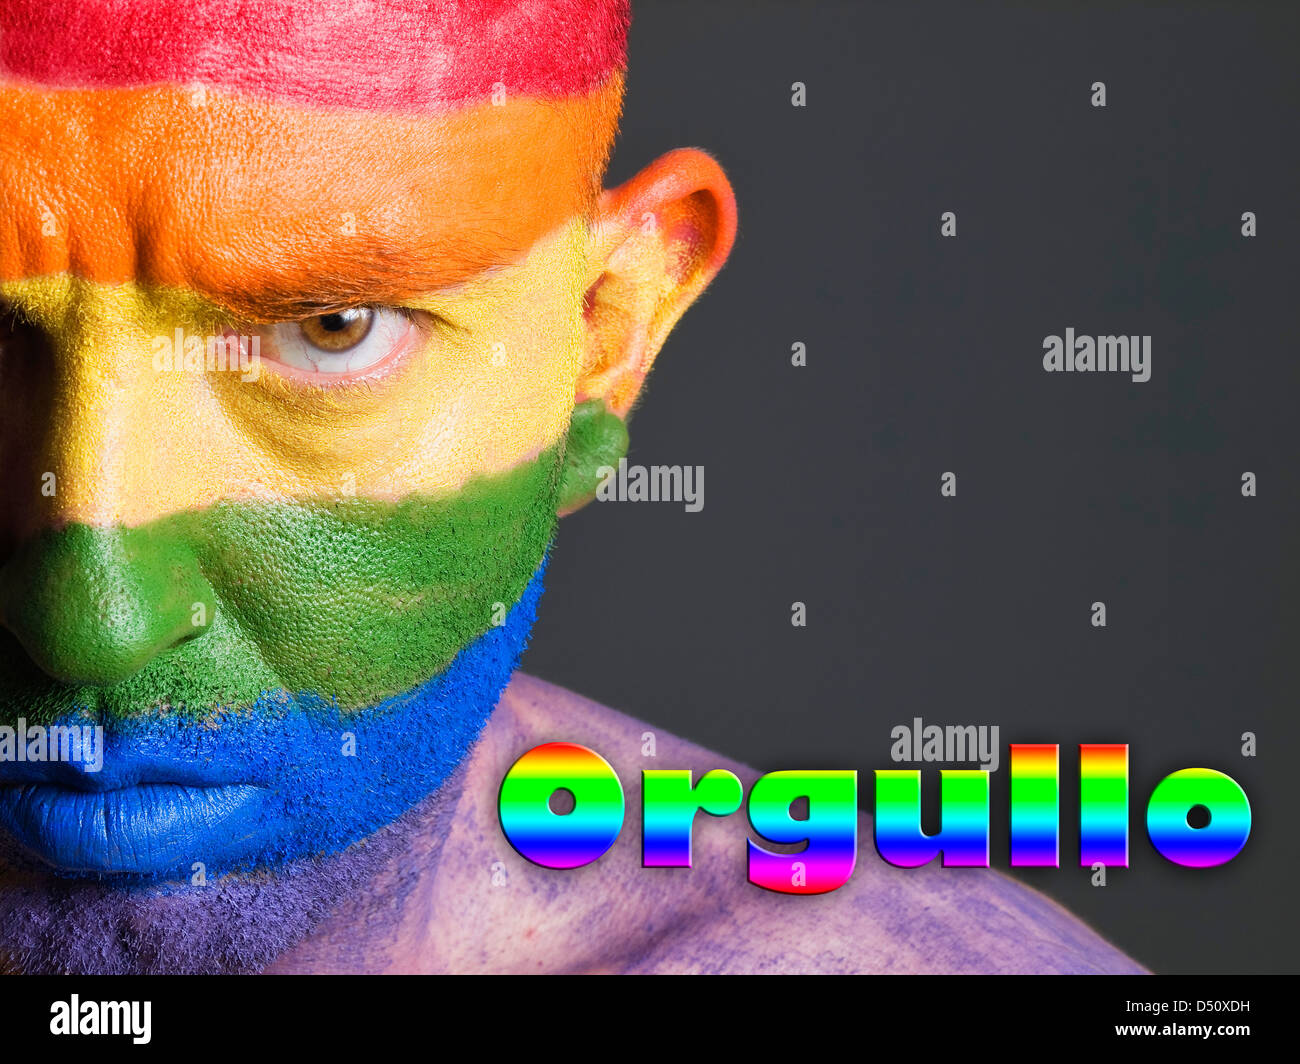 Hombre con la bandera gay pintada en la cara y con unà expresion seria. La Palabra Stampa orgullo esta escrita en lado delle Nazioni Unite. Foto Stock